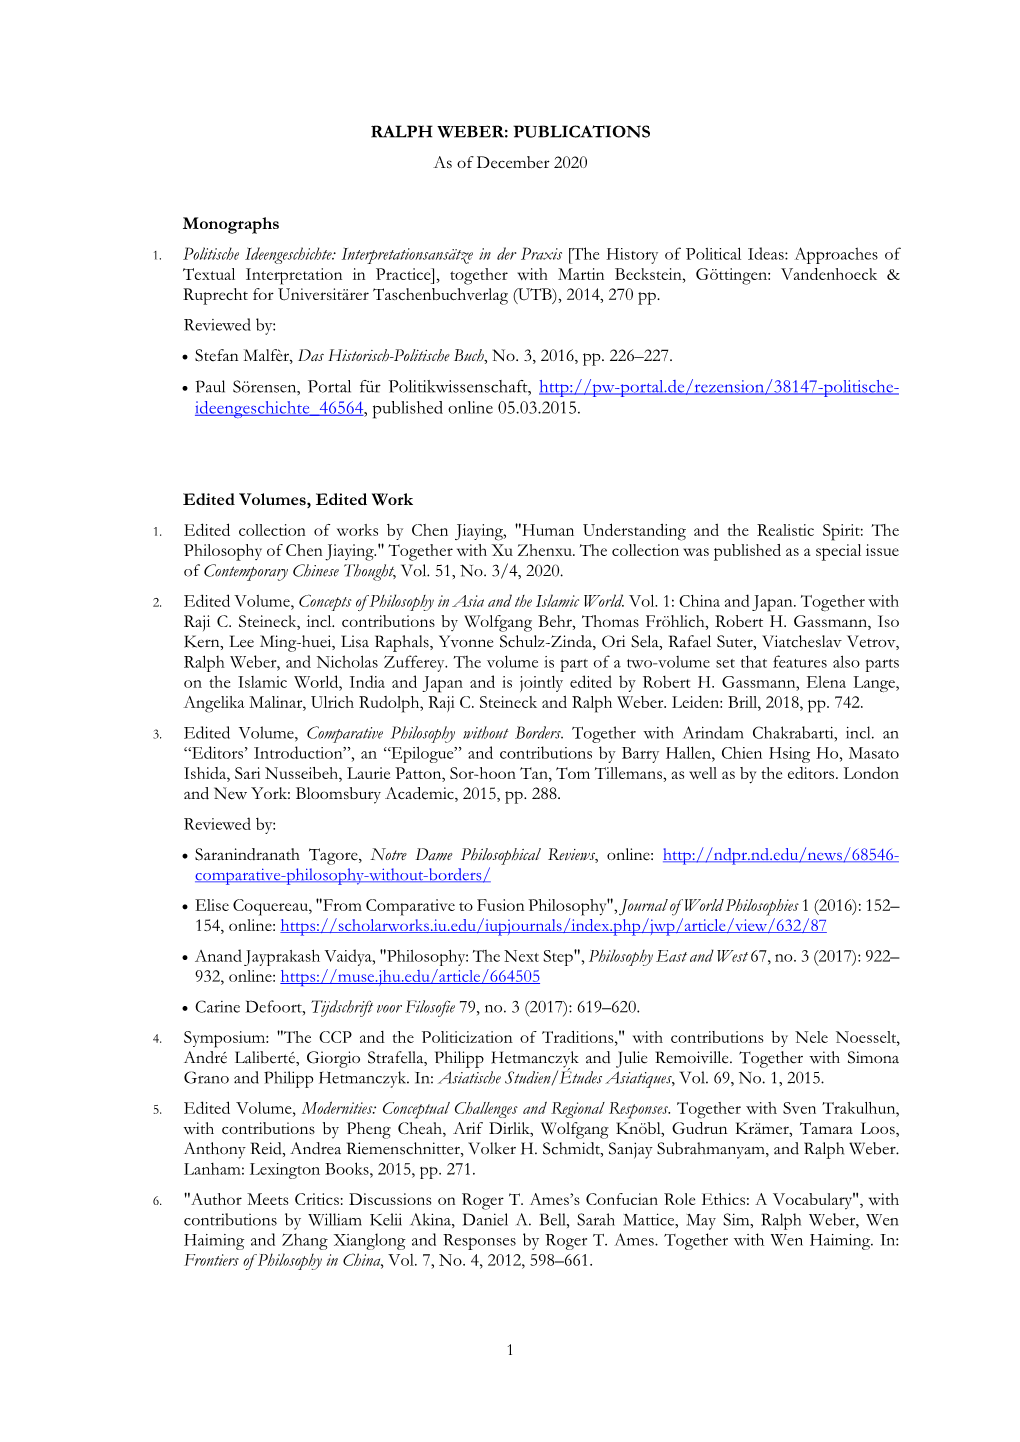 RALPH WEBER: PUBLICATIONS As of December 2020